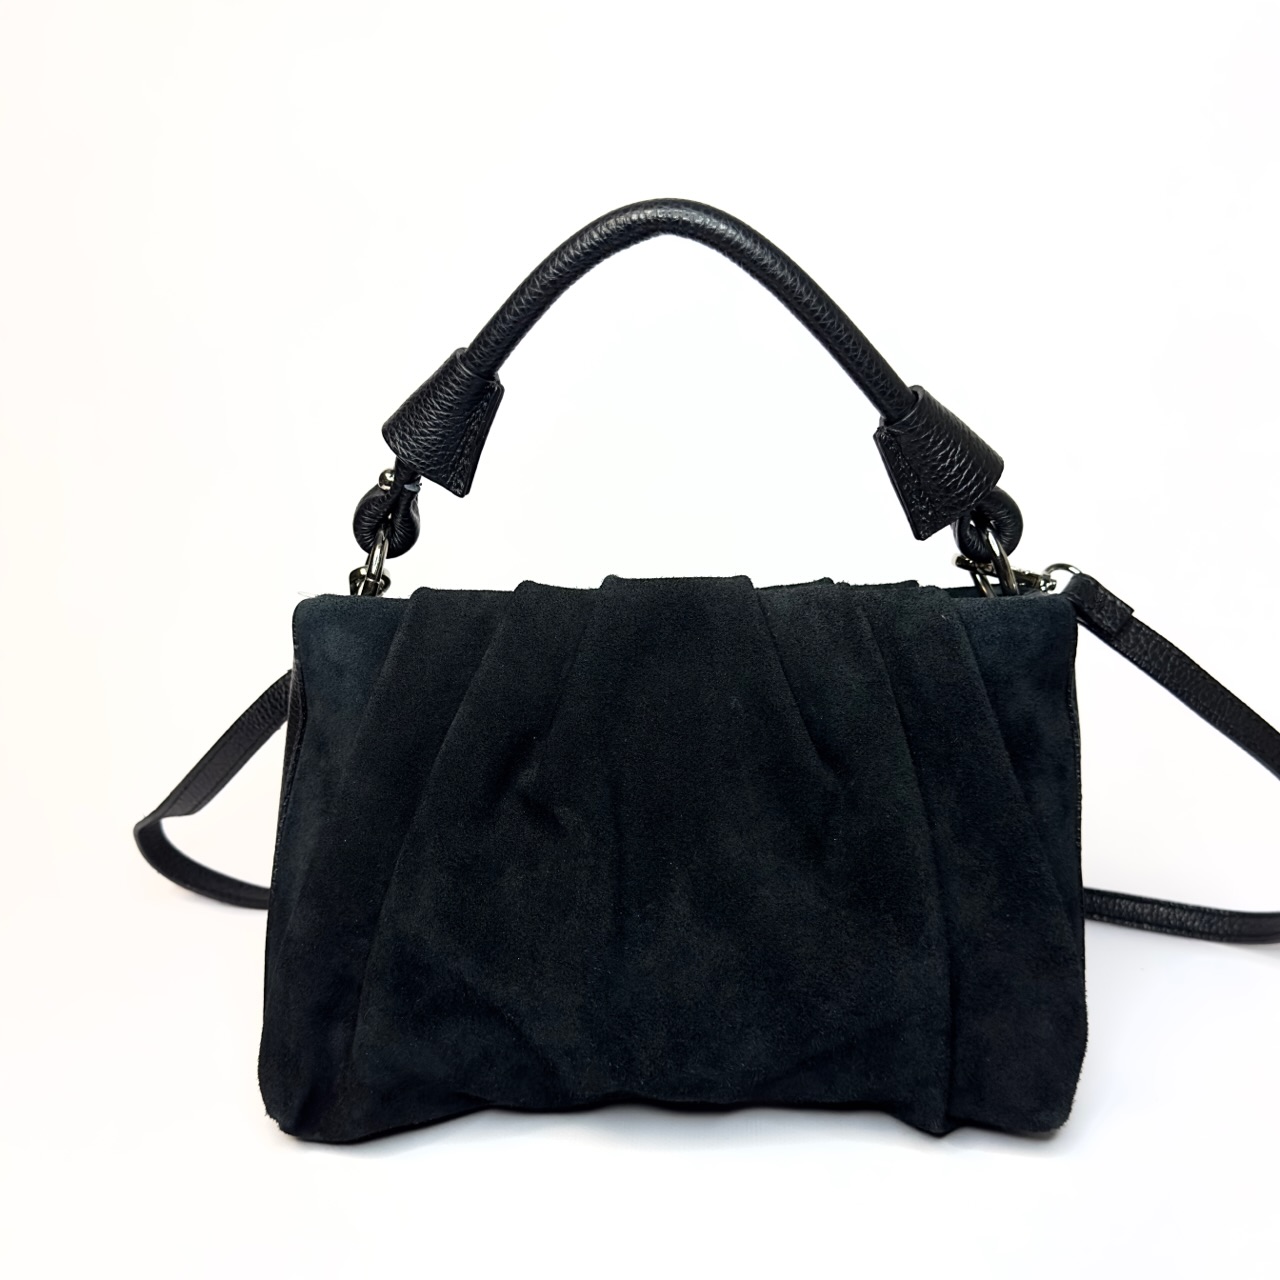 Купить замшевую итальянскую сумку vezze в интернет магазине https://marie-bag.store/